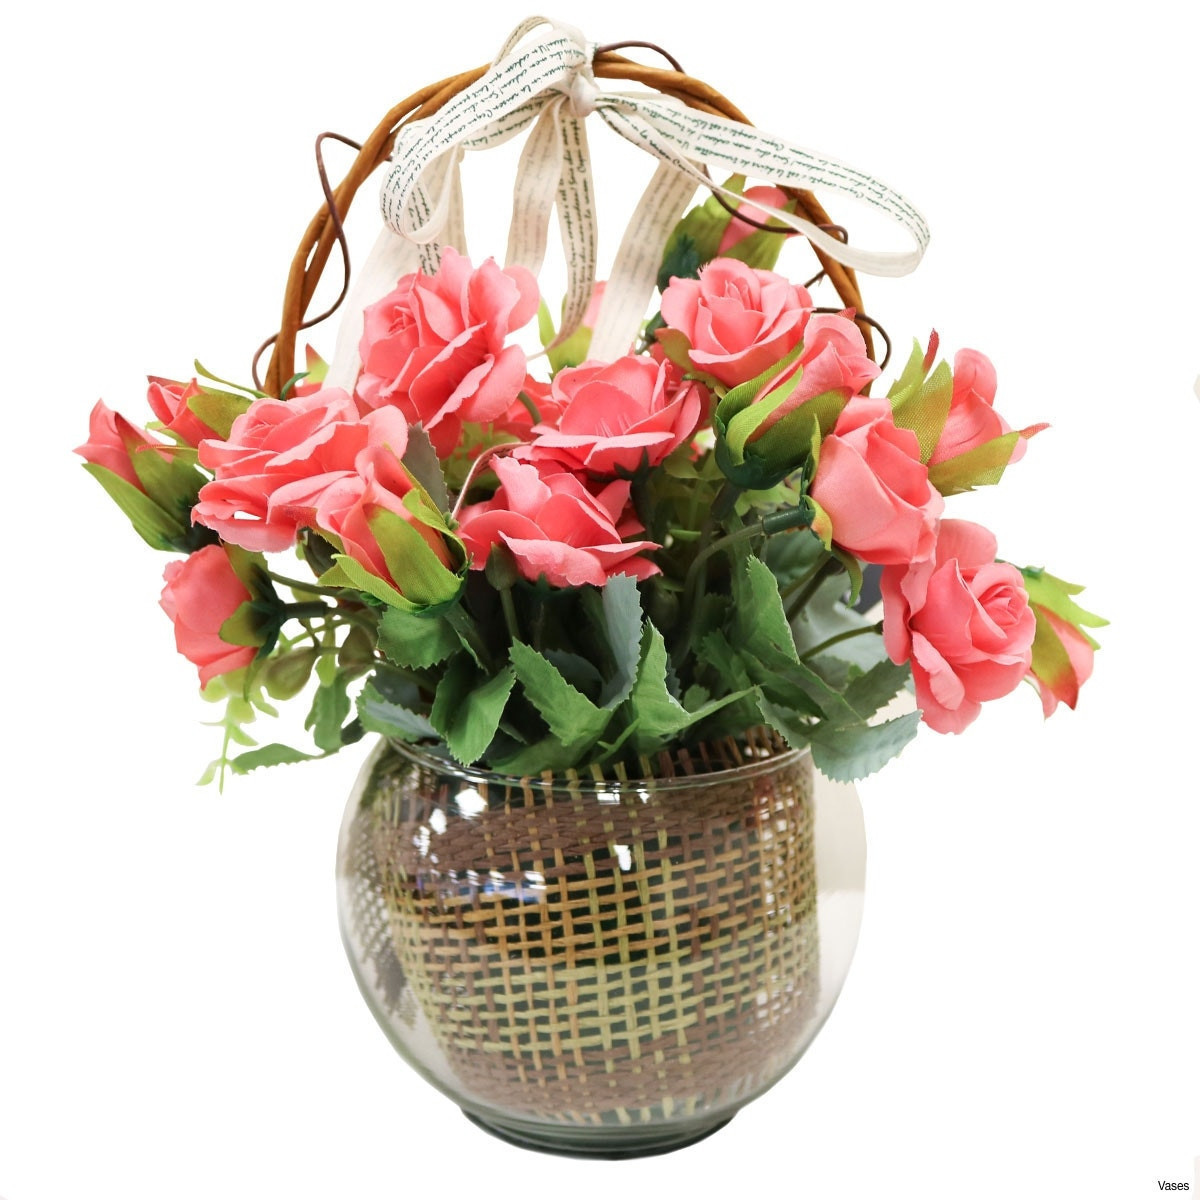 25 Elegant Oval Flower Vase 2024 free download oval flower vase of 30 elegant flower basket decoration flower decoration ideas for bf142 11km 1200x1200h vases pink flower vase i 0d gold inspiration